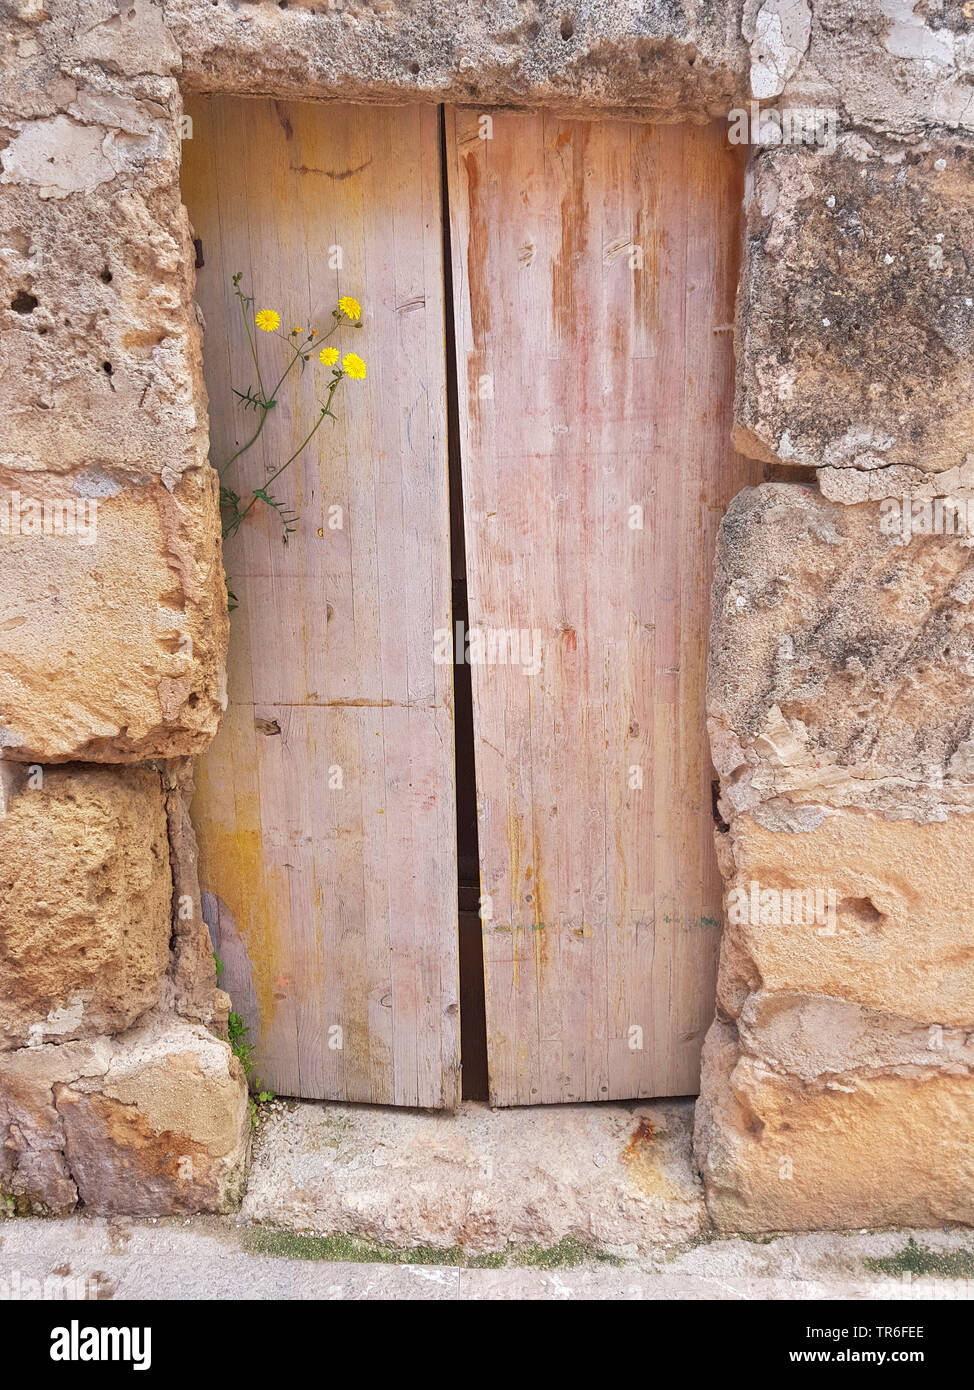 La porte en bois dans une maison en pierre de fleurs de chardon, Espagne, Îles Baléares, Majorque Banque D'Images